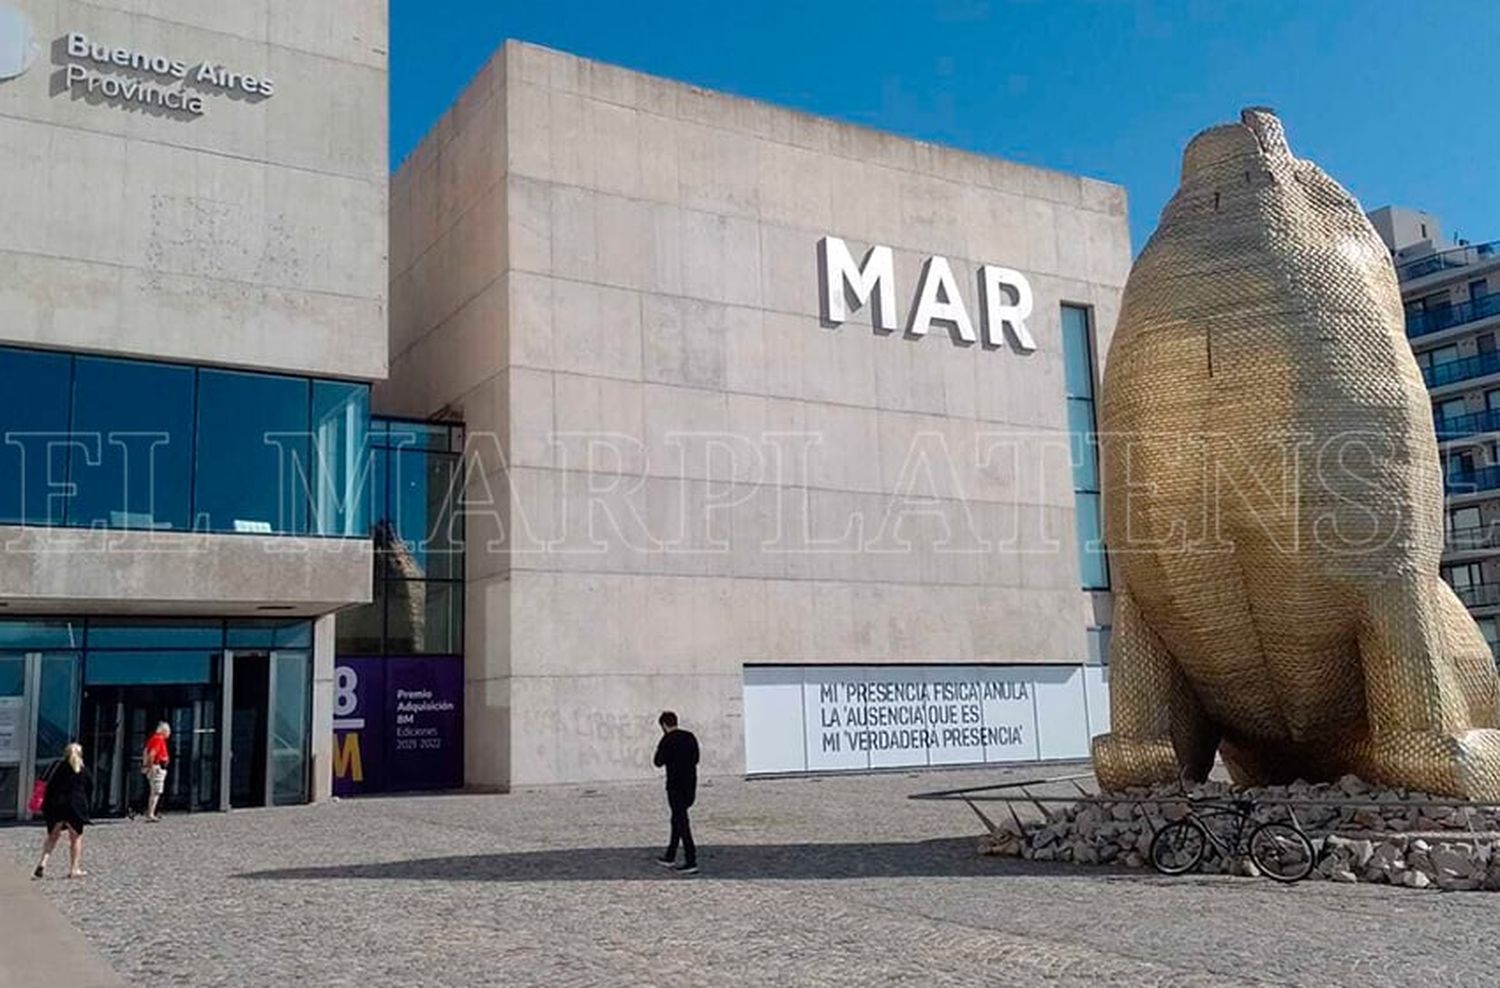 Propuestas culturales en el Museo Mar con motivo de los festejos por los 10 años